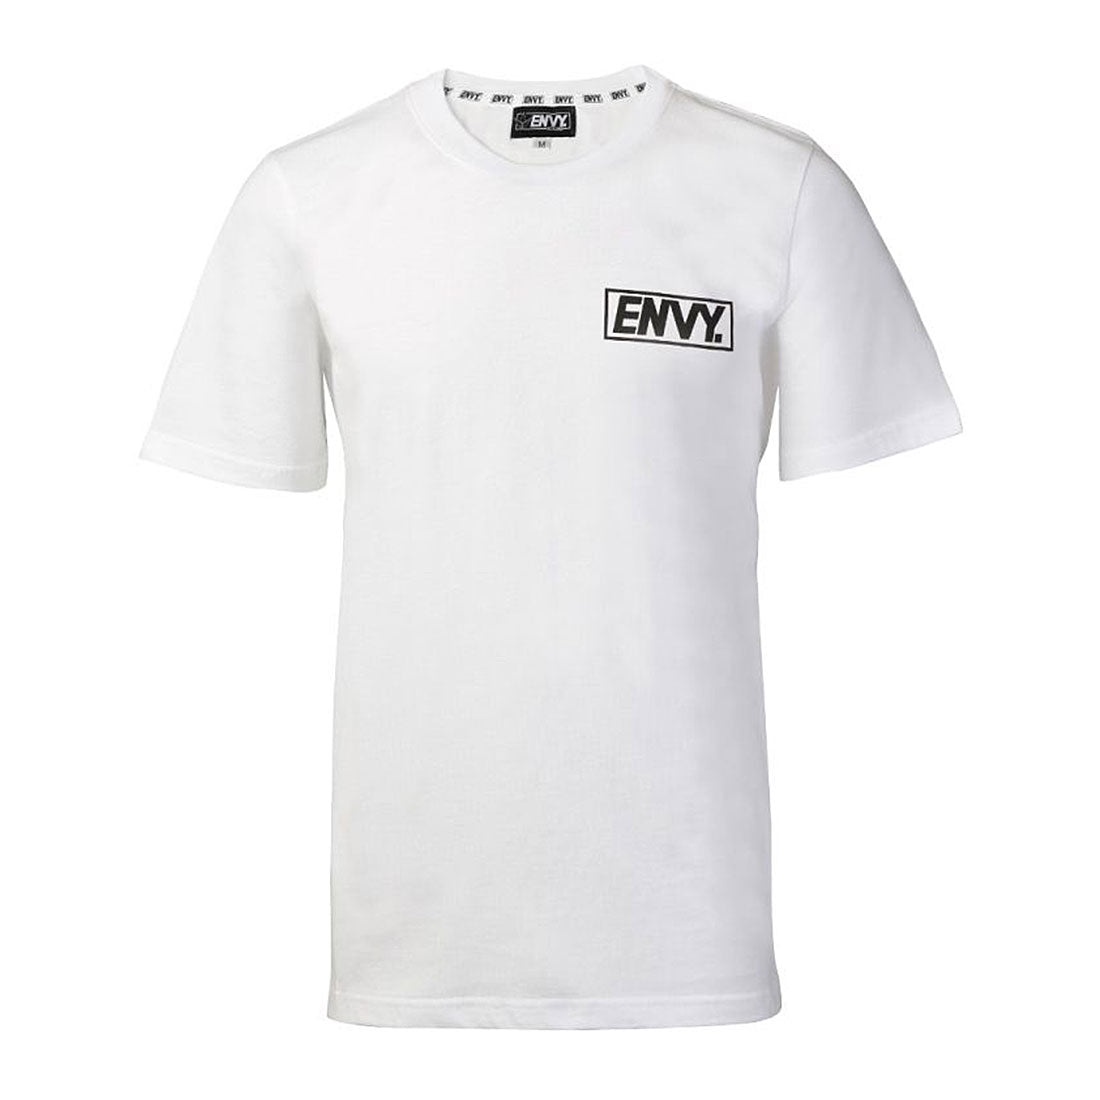 Envy Essential T-Shirt - White Apparel Tshirts